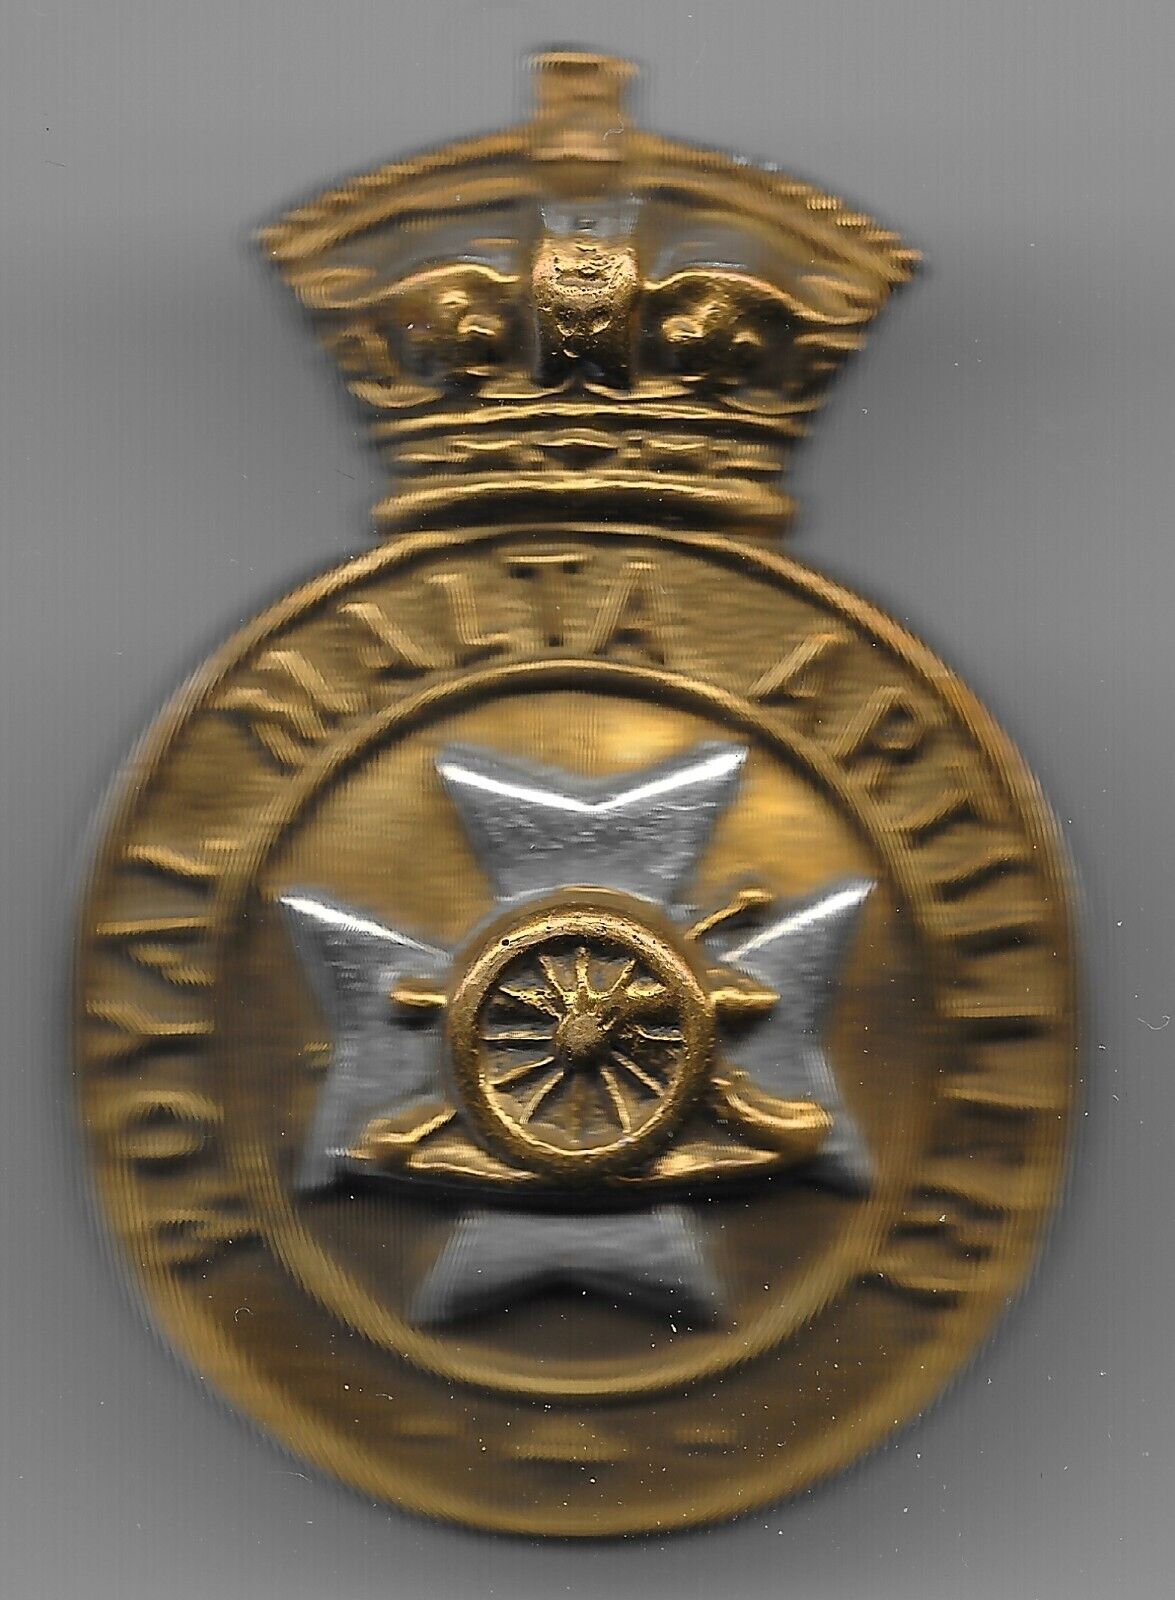 Original Royal Malta Artillery Bi-metal Cap Badge from the period 1899-1904